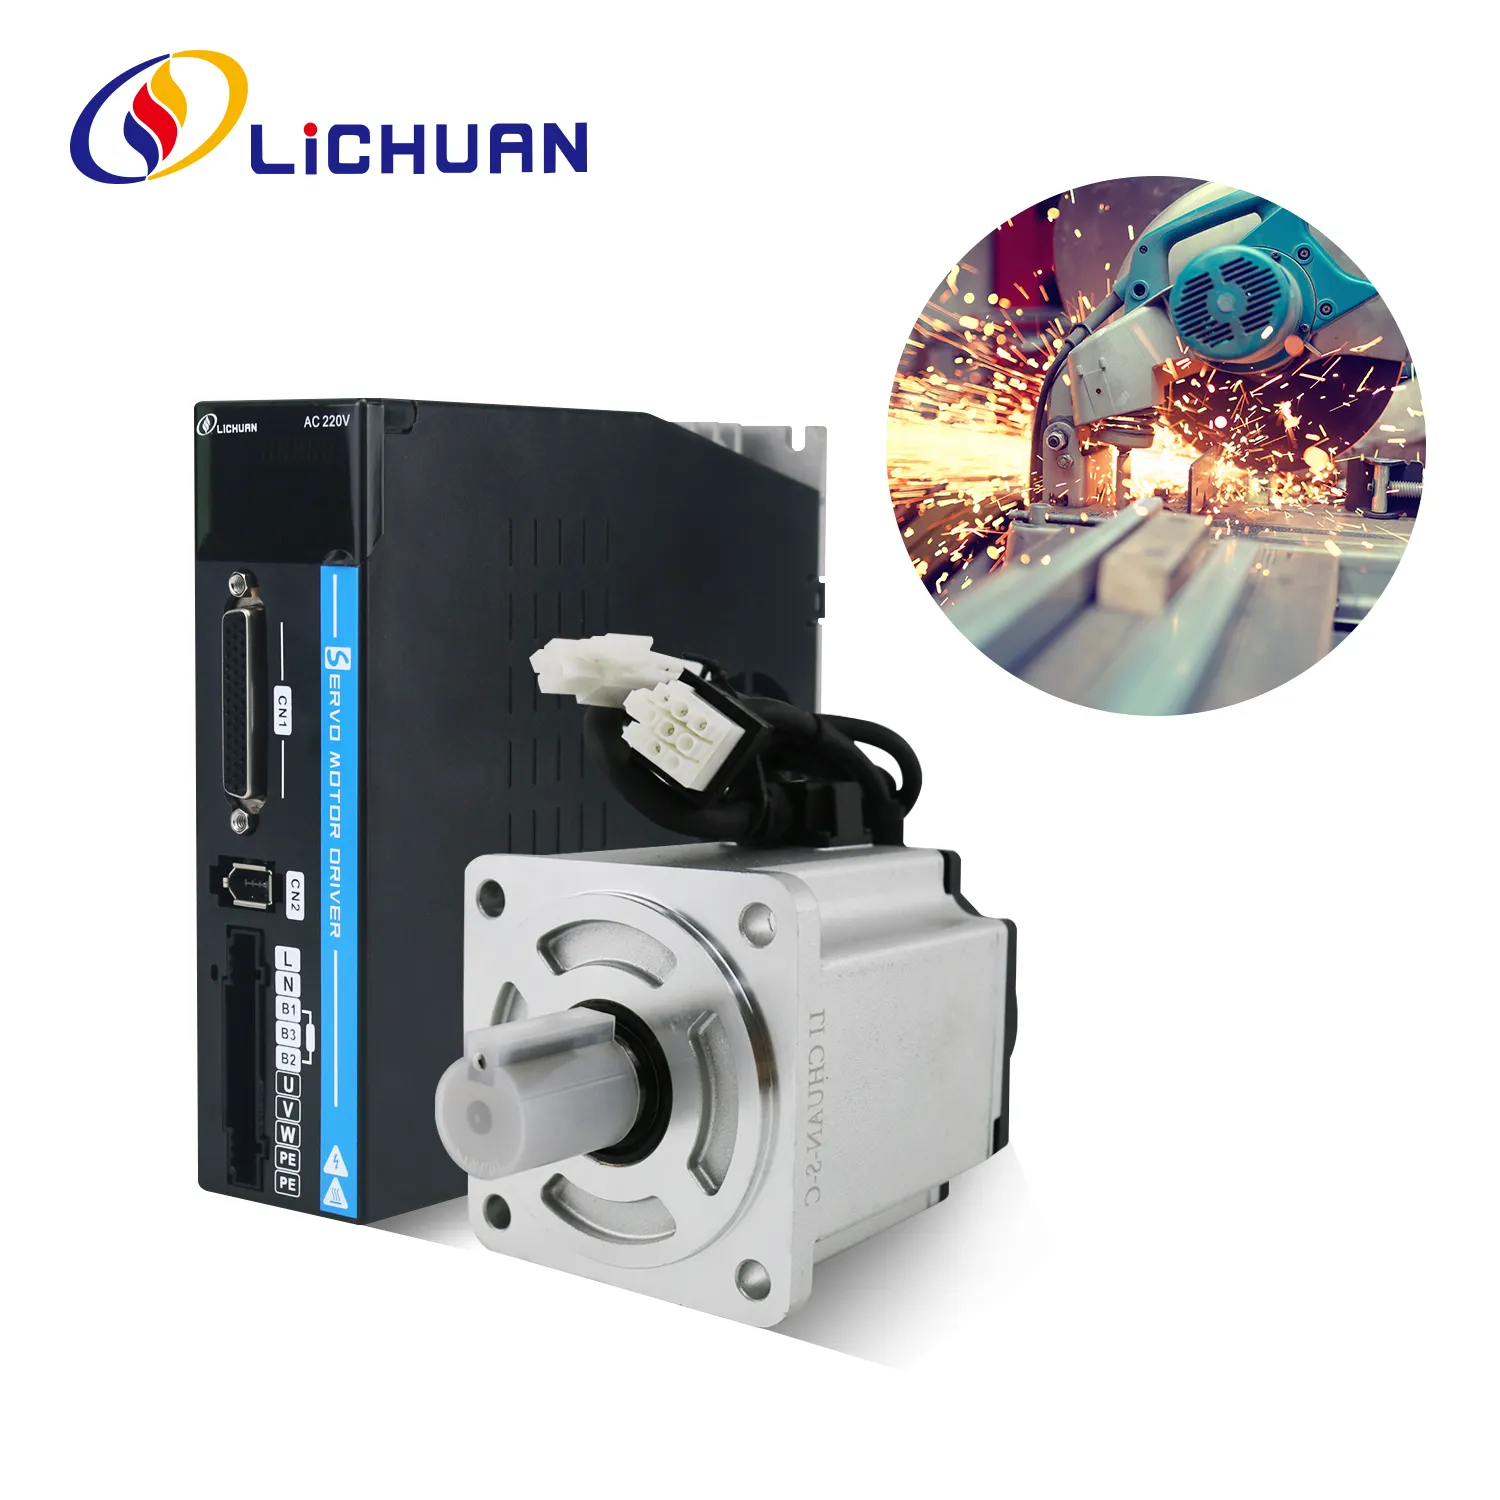 Серводвигатели и драйверы переменного тока Lichuan 220 В 3000 об/мин IP65 серии A5 200 Вт 400 Вт 600 Вт 750 Вт 1000 Вт комплект Серводвигателей переменного тока для робота